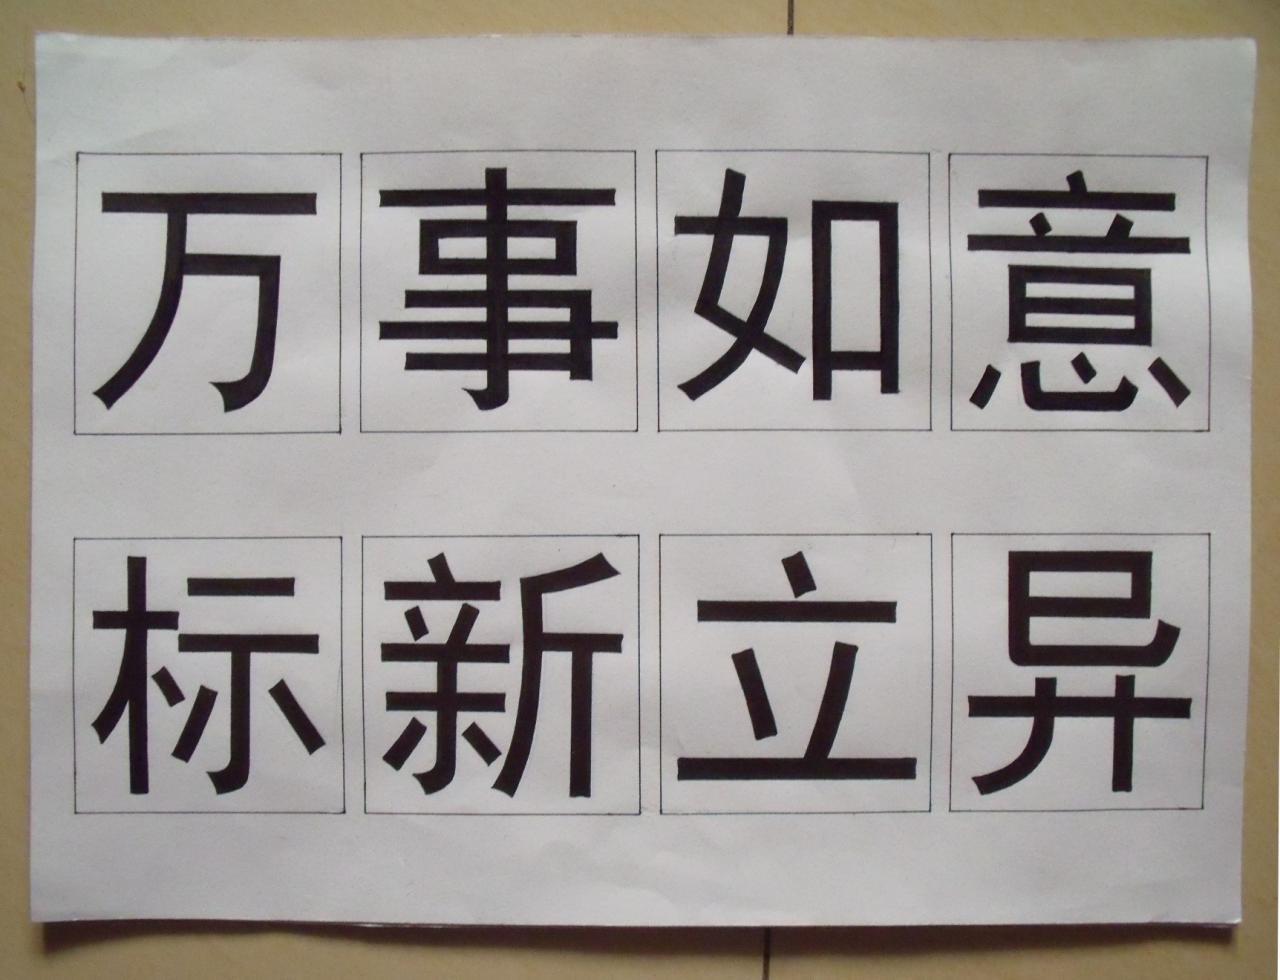 定义 "黑体"及中文字体的一种,关于 "黑